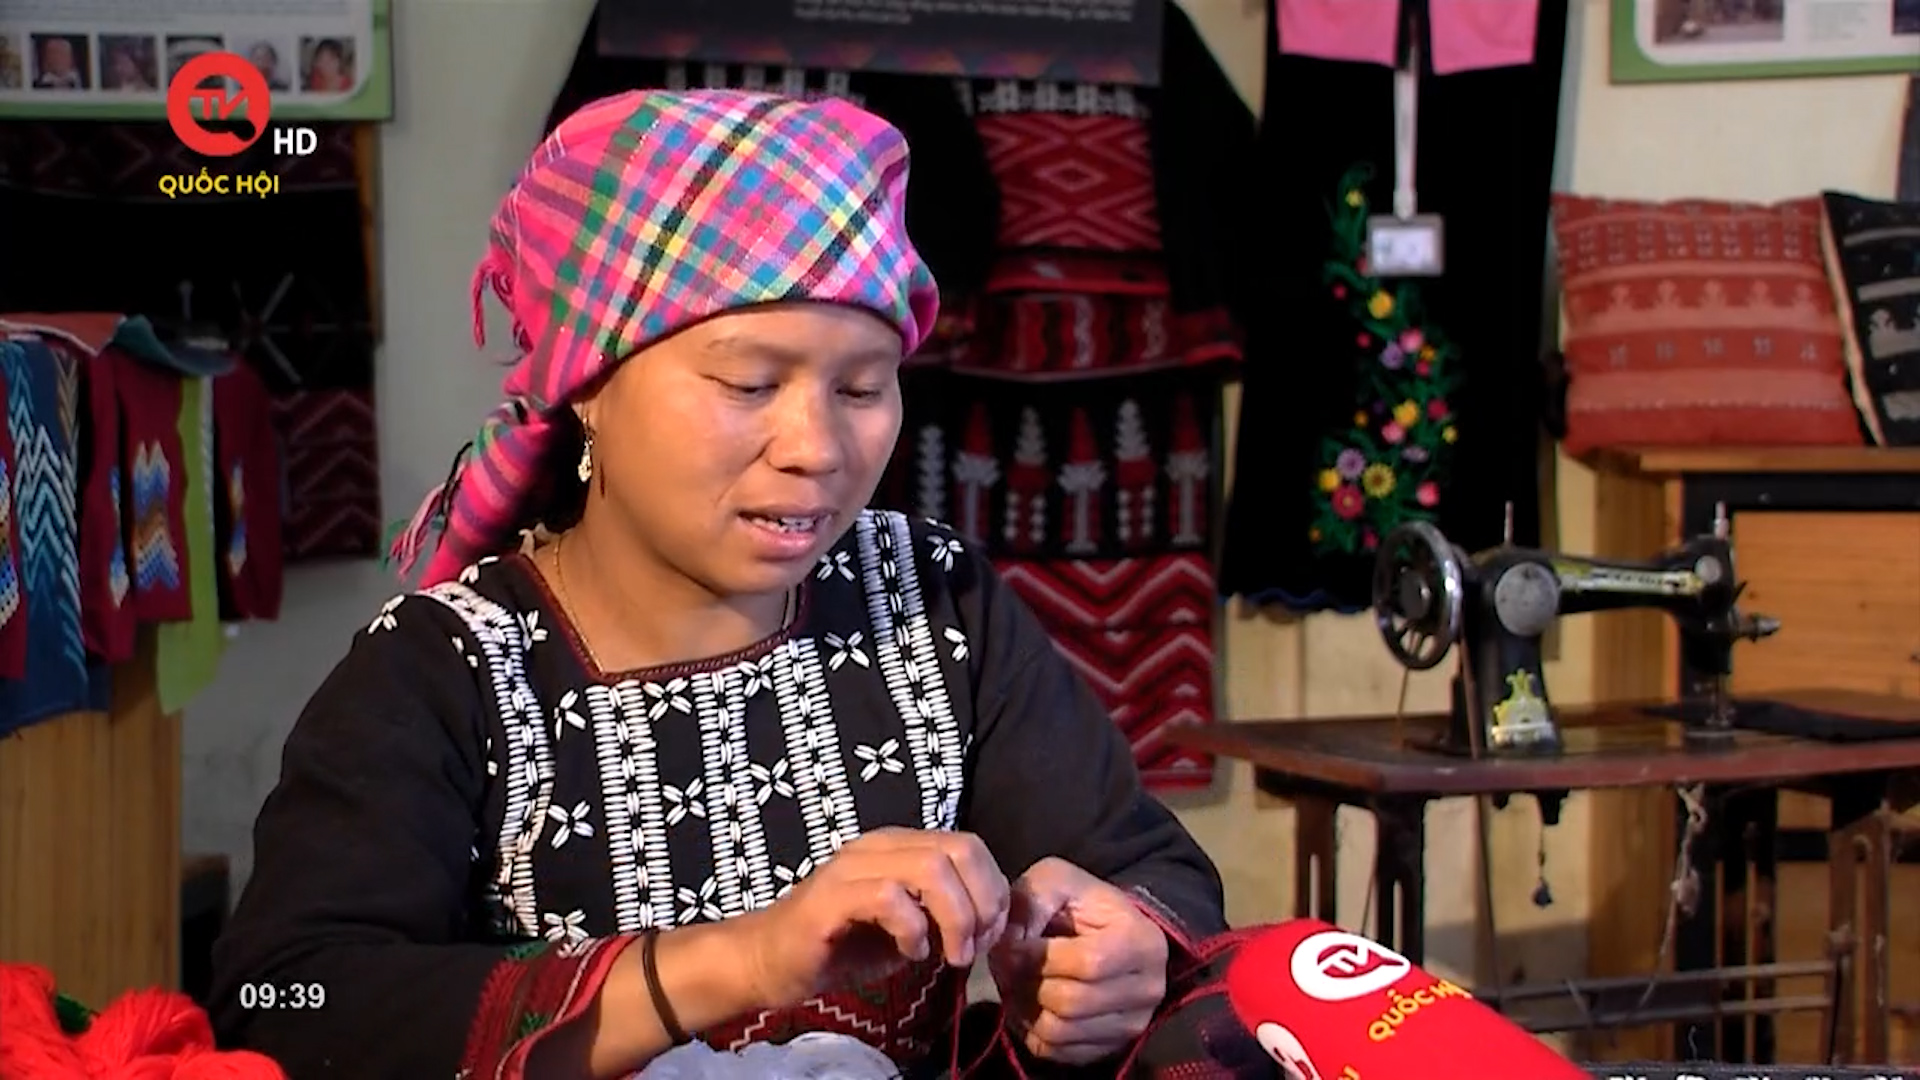 Muôn màu cuộc sống: Bảo tồn trang phục truyền thống các dân tộc Lào Cai